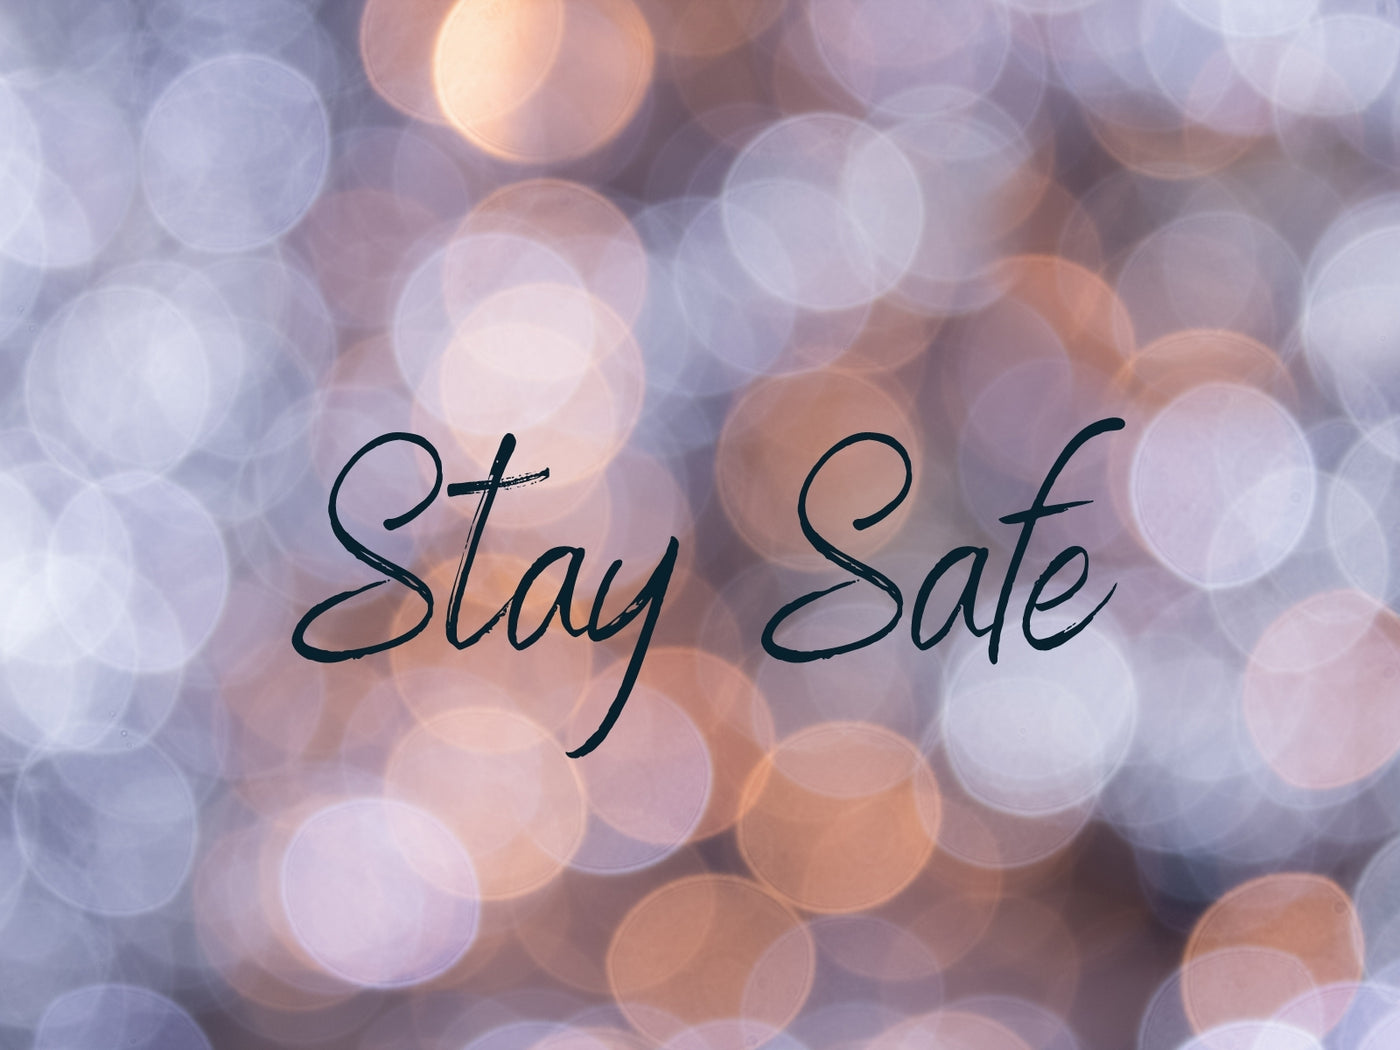 StaySafe %